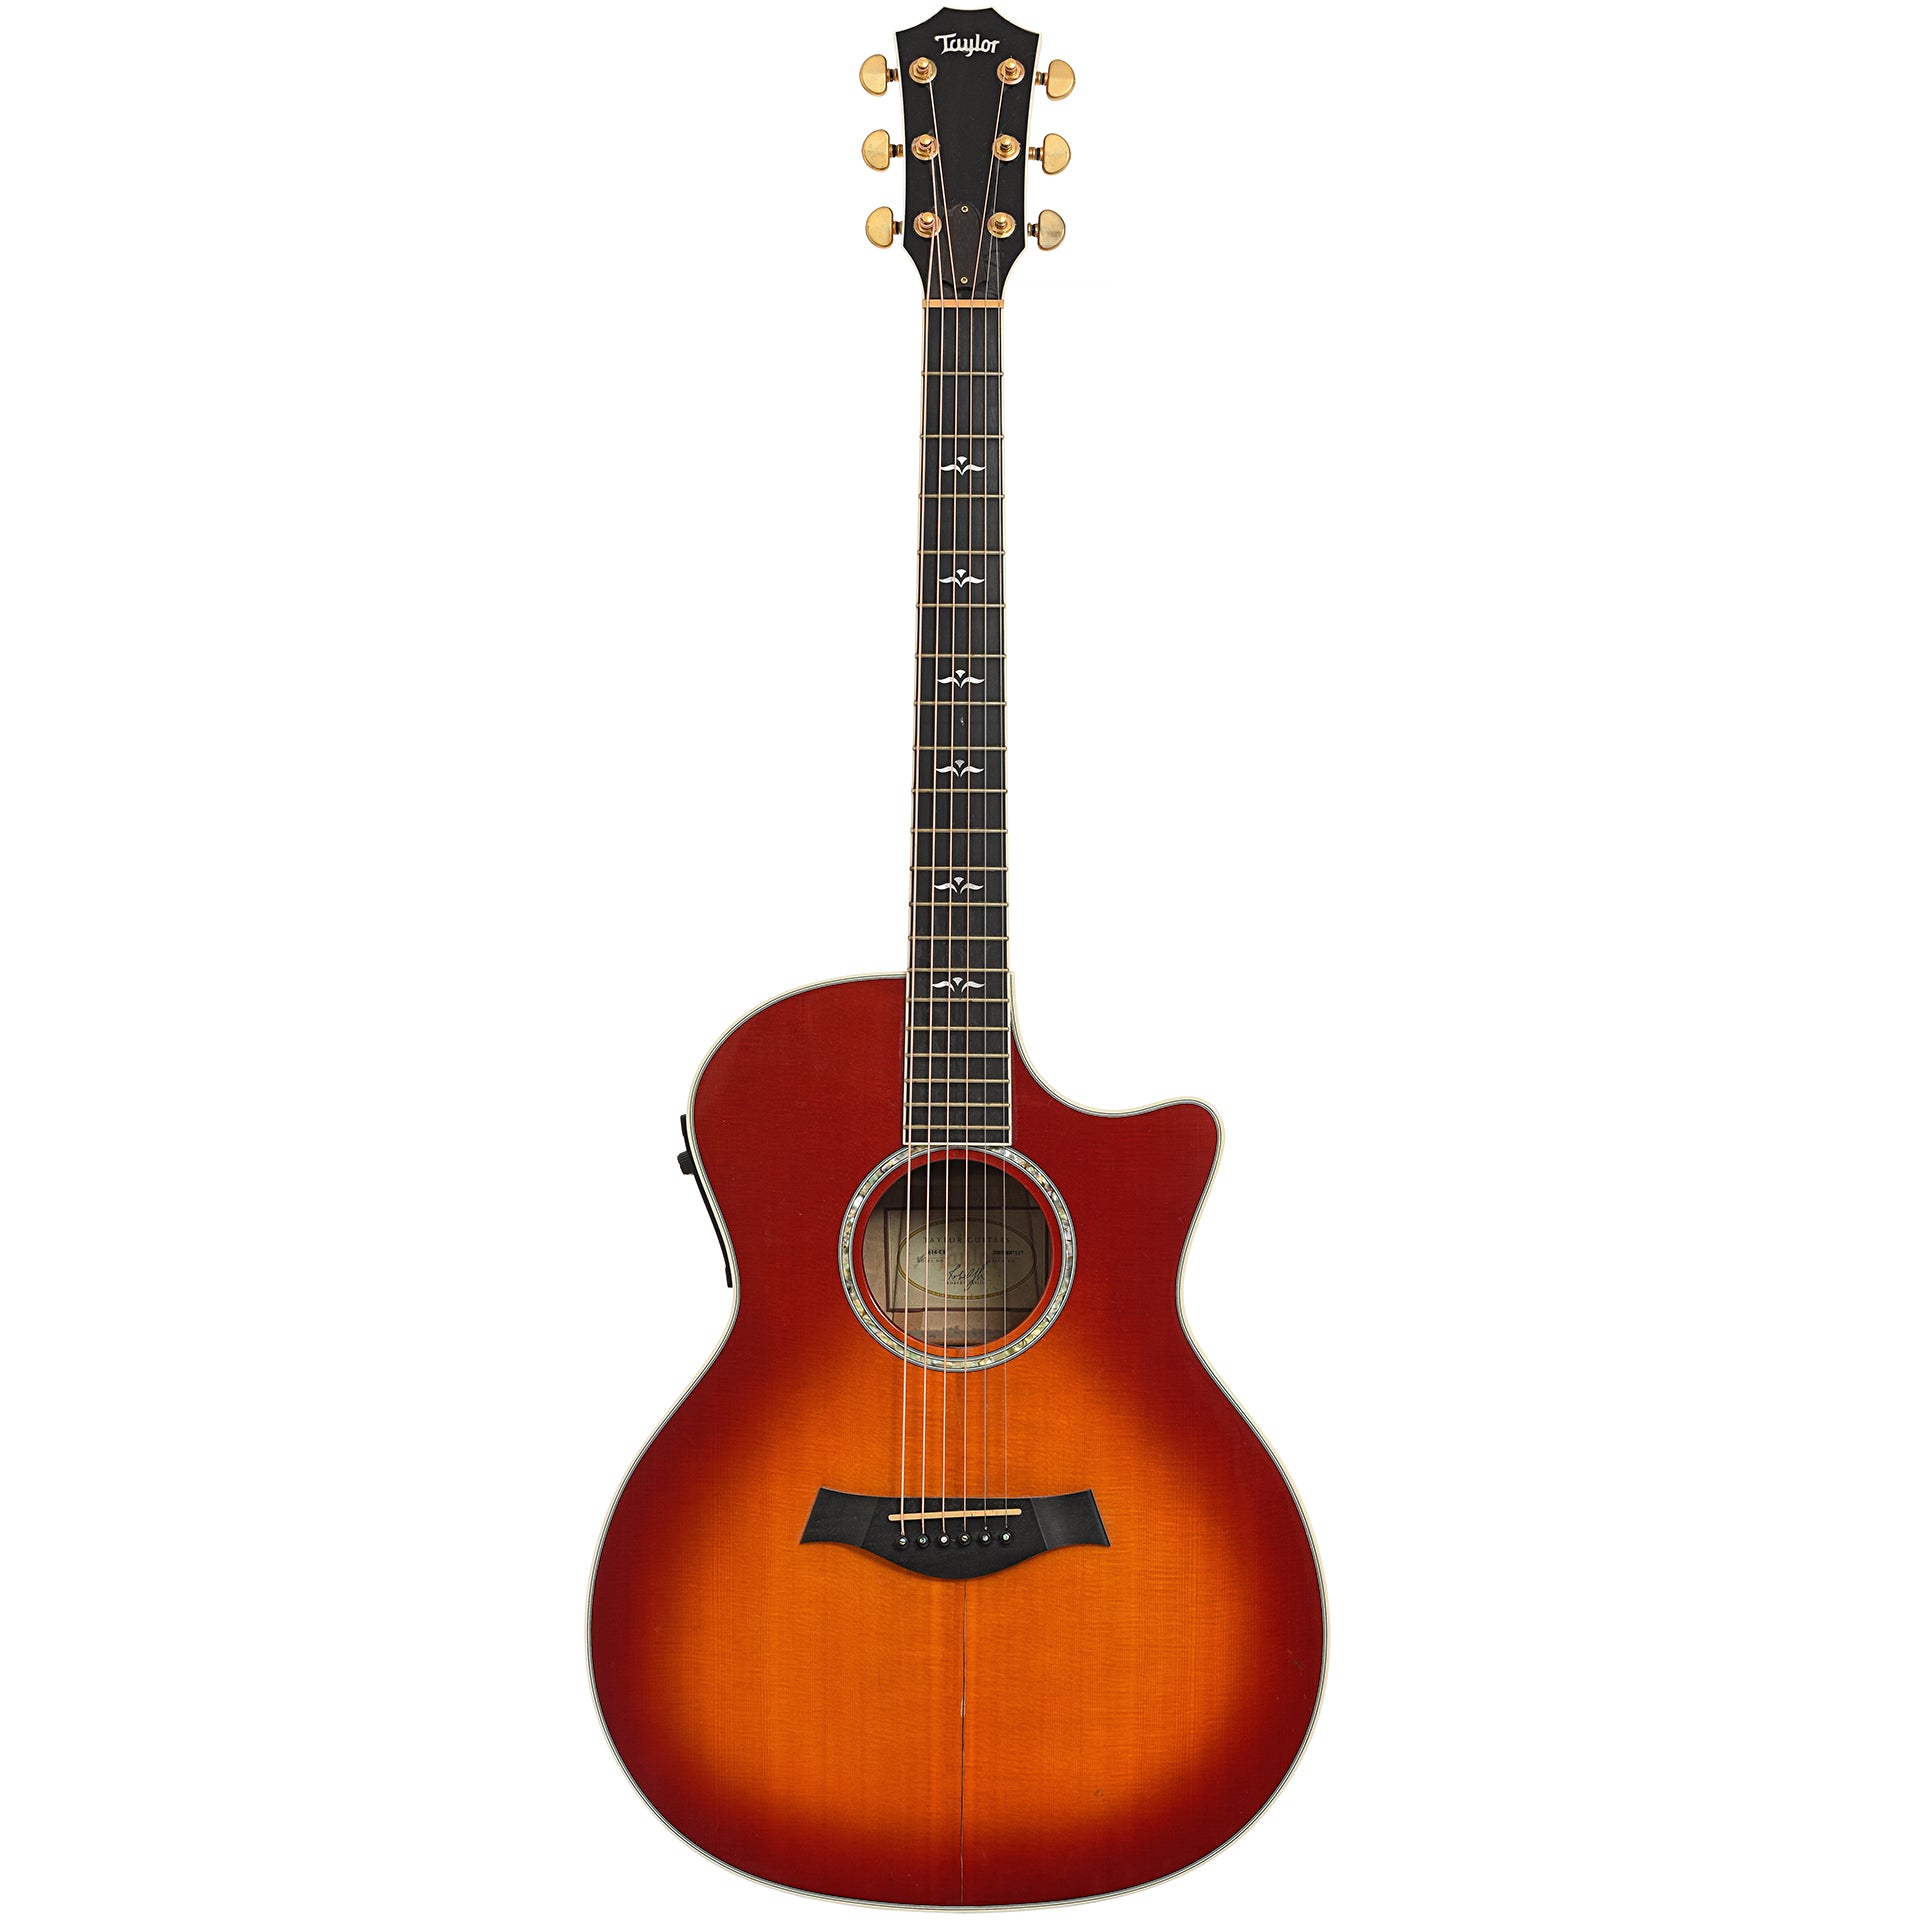 Taylor 614ce Cherry Sunburst Acoustic Electric Guitar (2001 